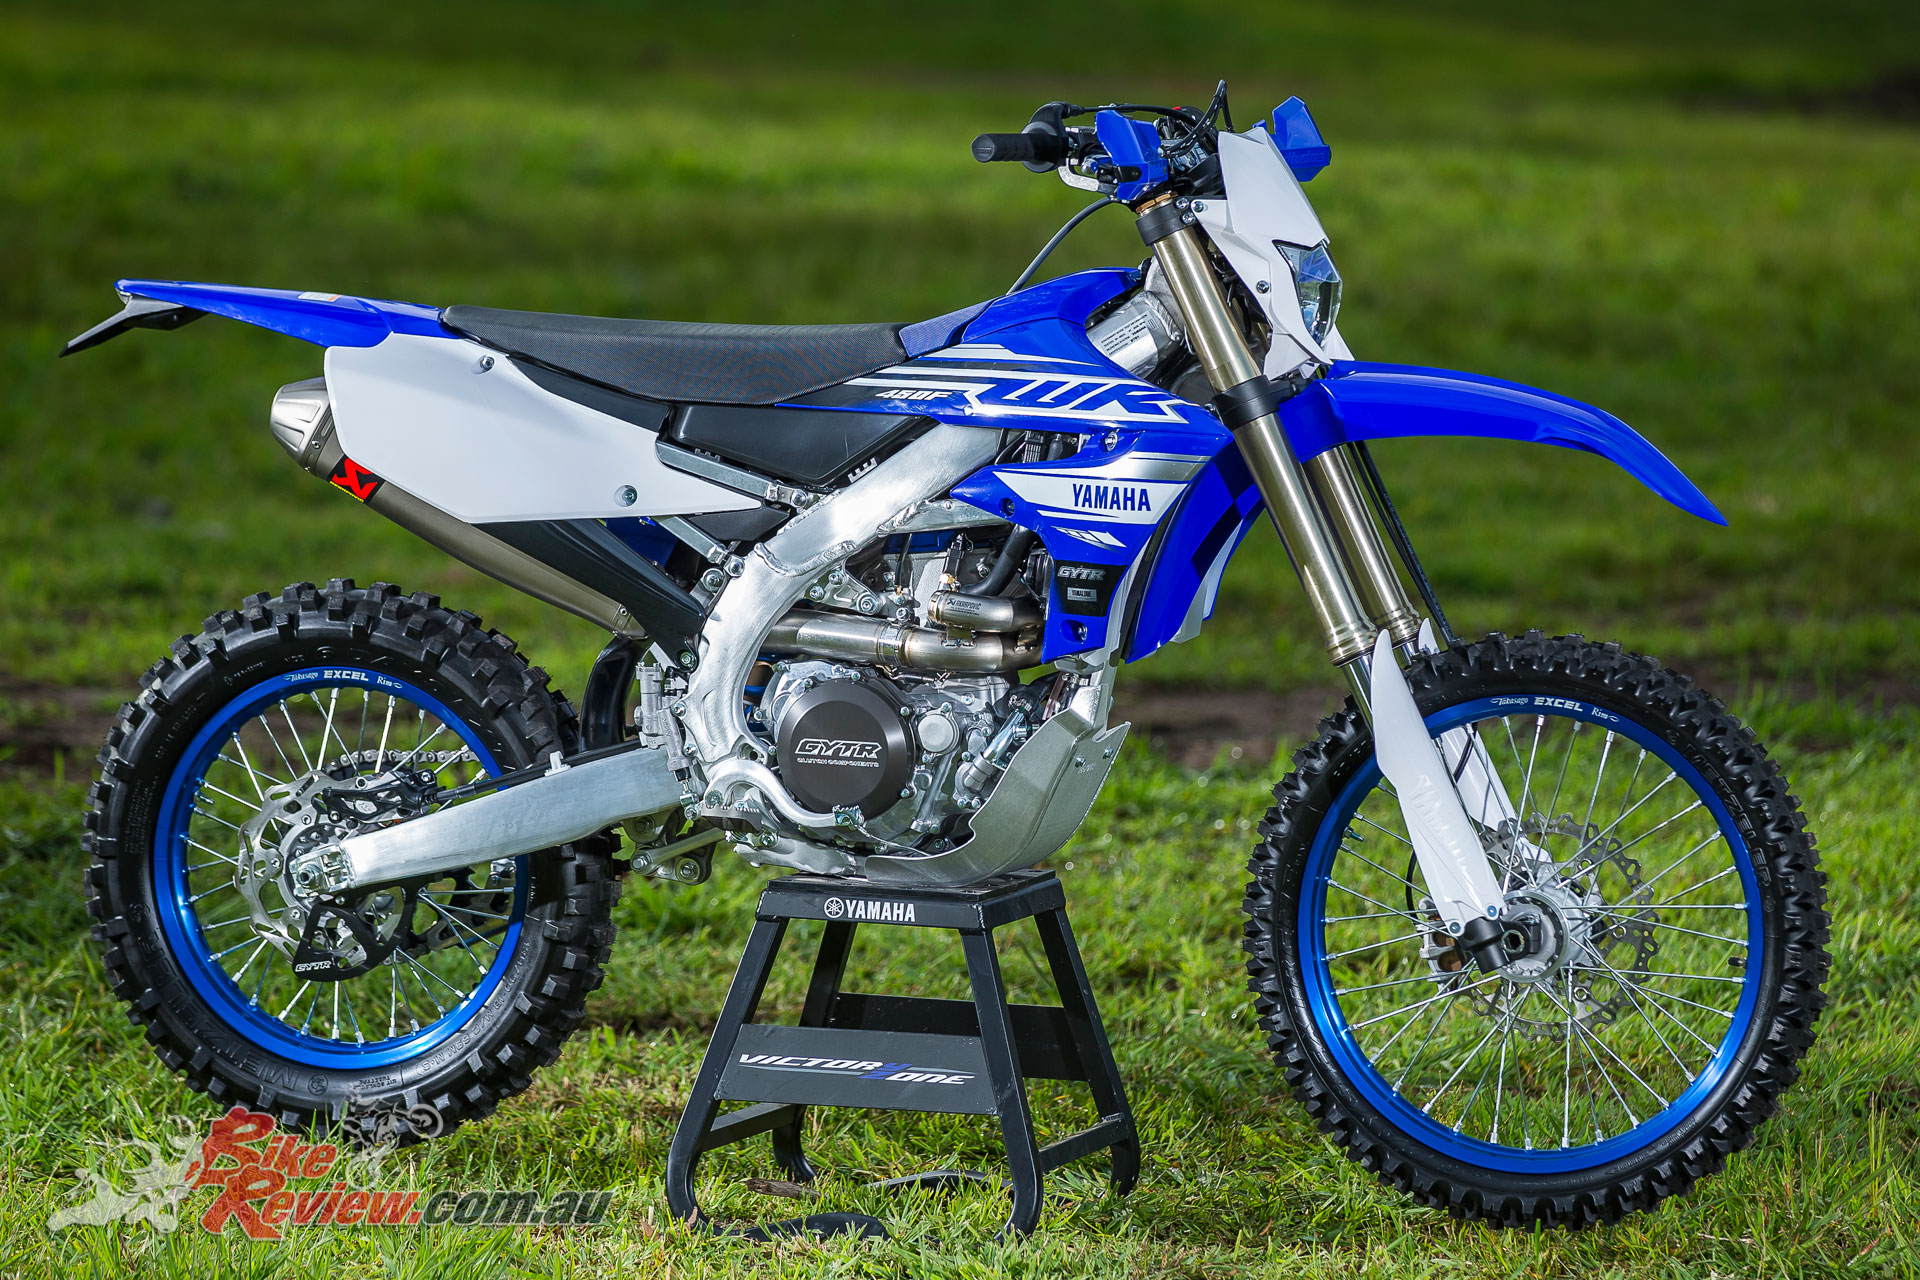 2019 Yamaha WR450F